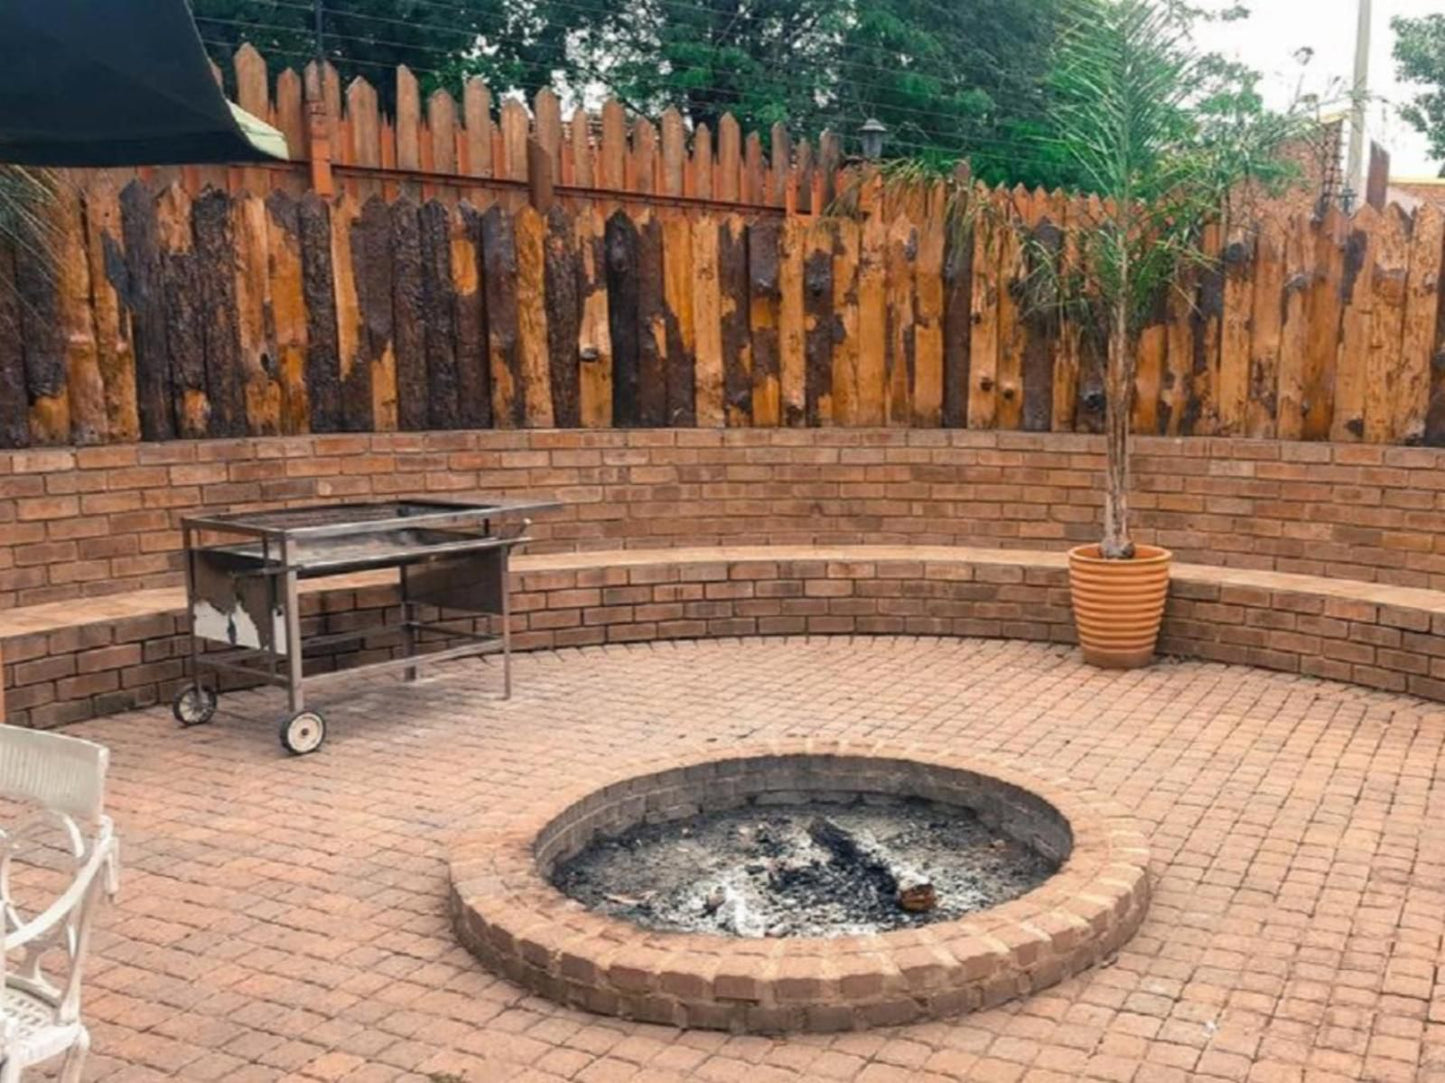 Aark Guest Lodge Vanderbijlpark Gauteng South Africa Fire, Nature, Brick Texture, Texture, Garden, Plant